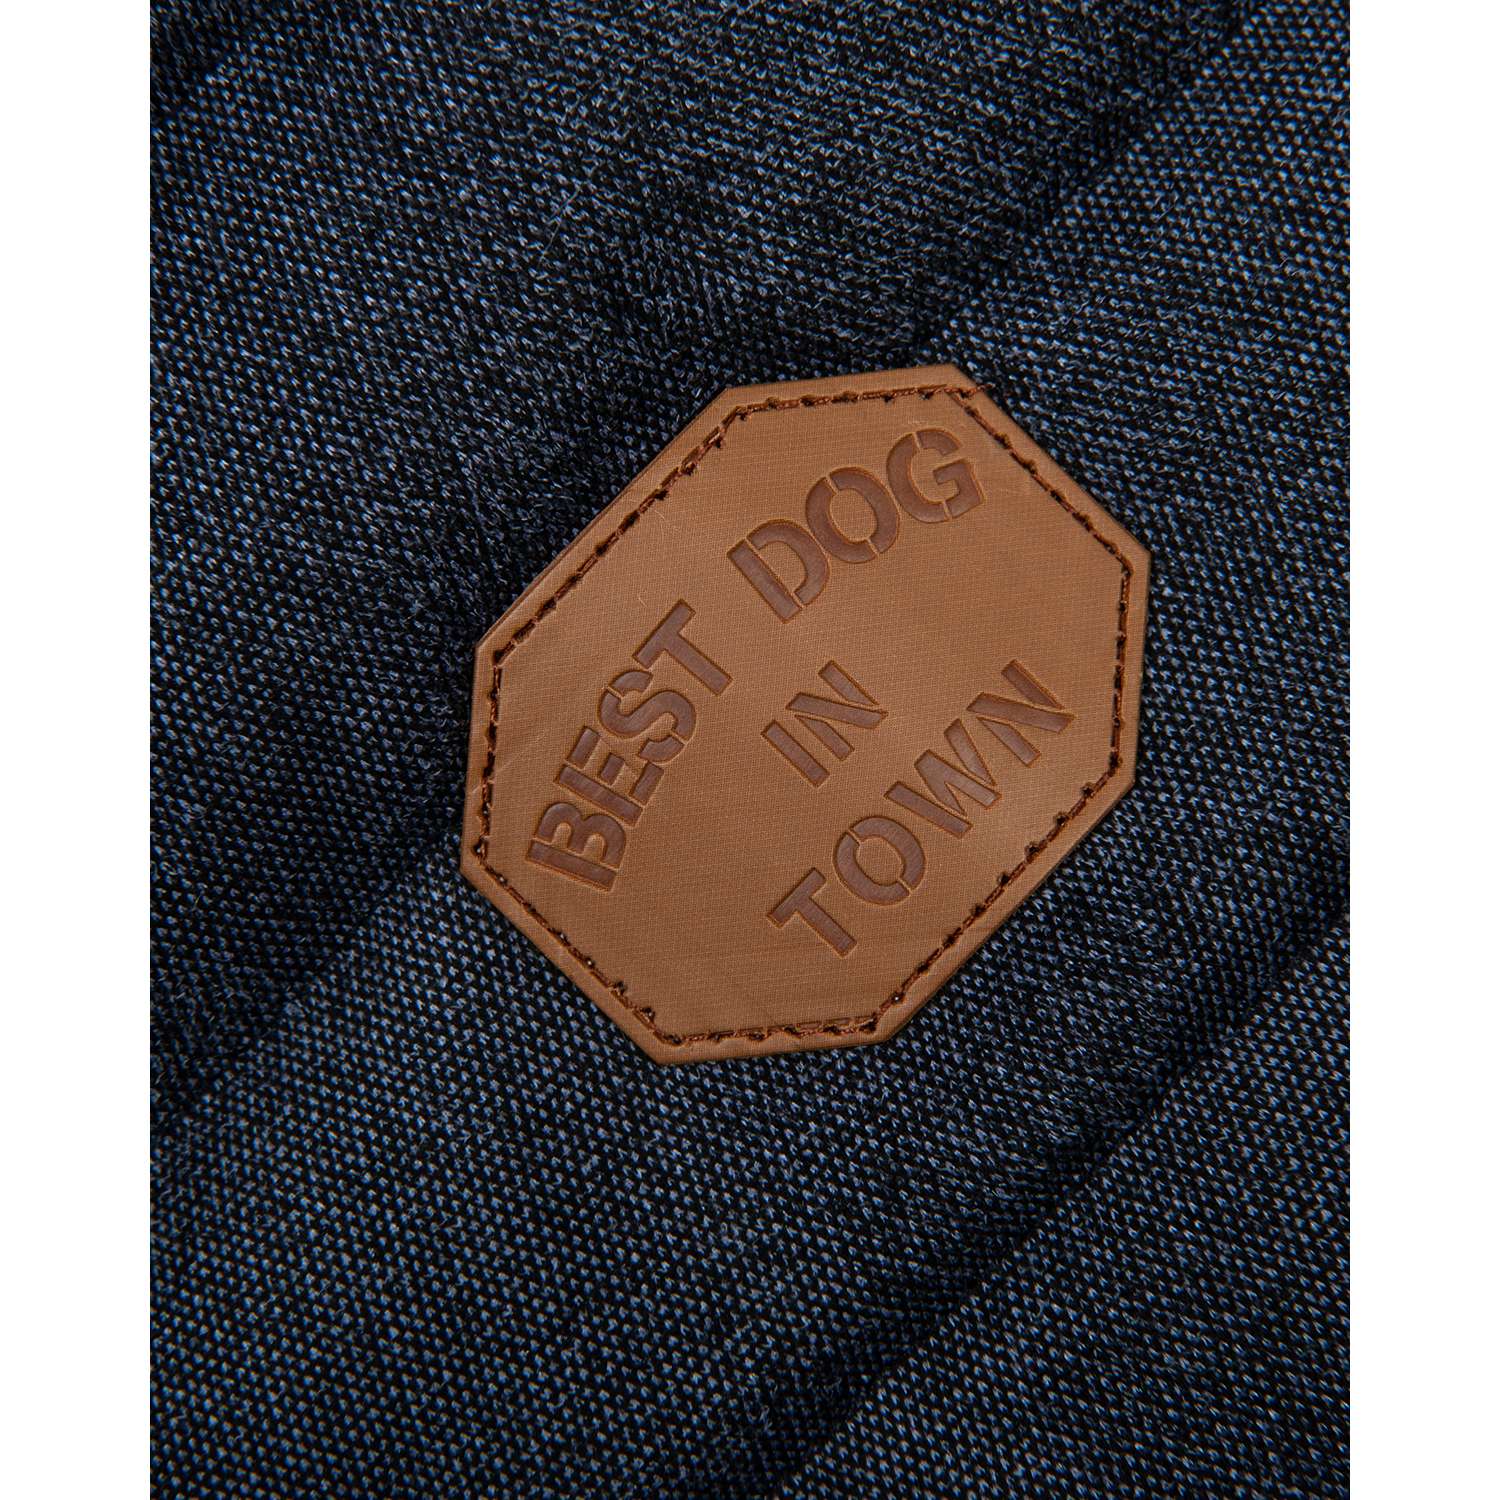 Куртка для собак Зоозавр тёмно-синяя 40 - фото 3